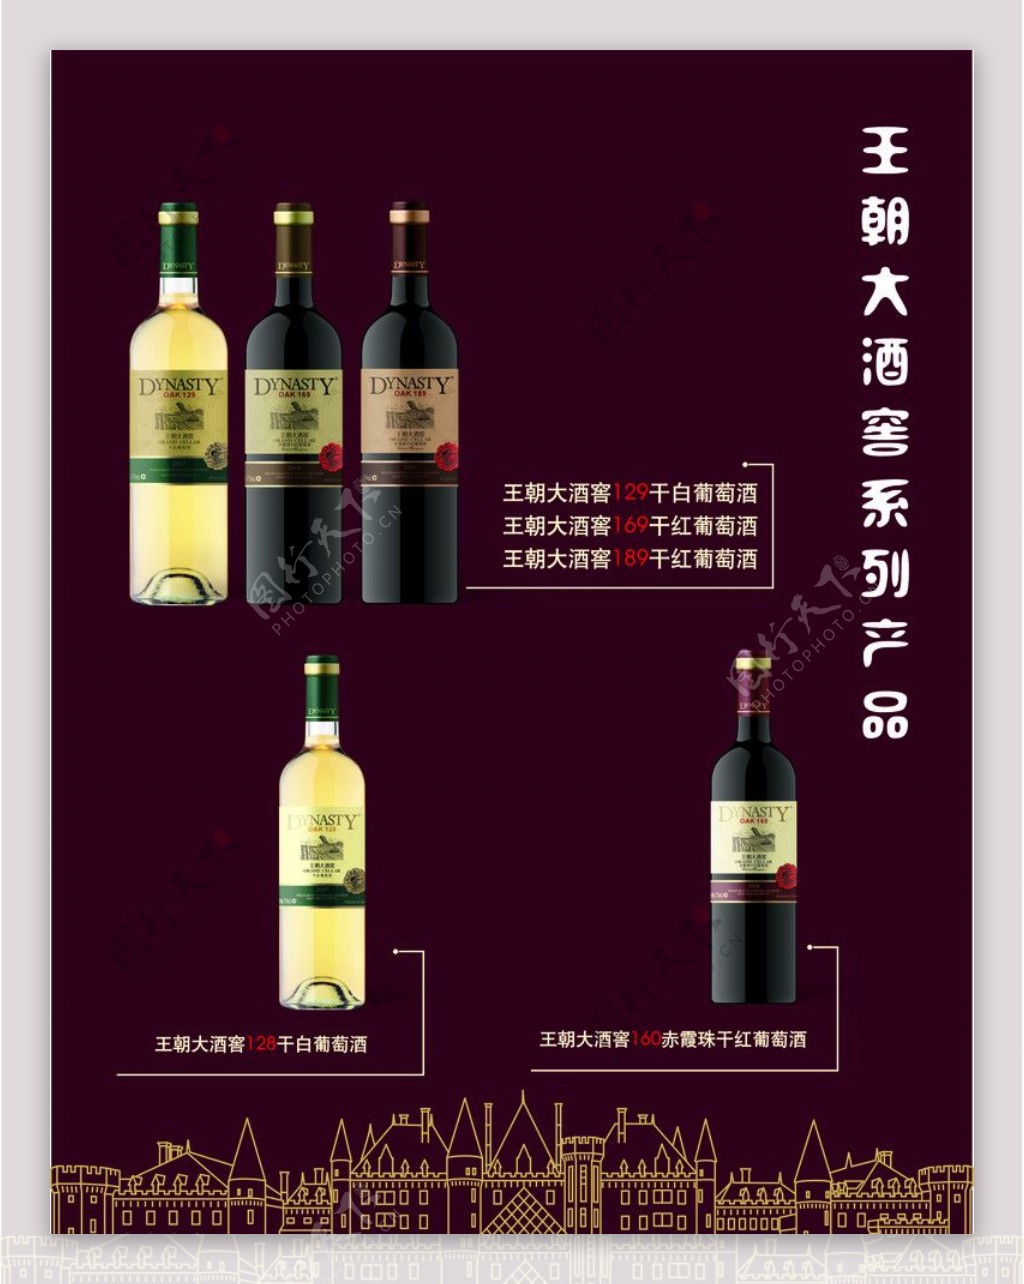 王朝大酒窖系列产品图片